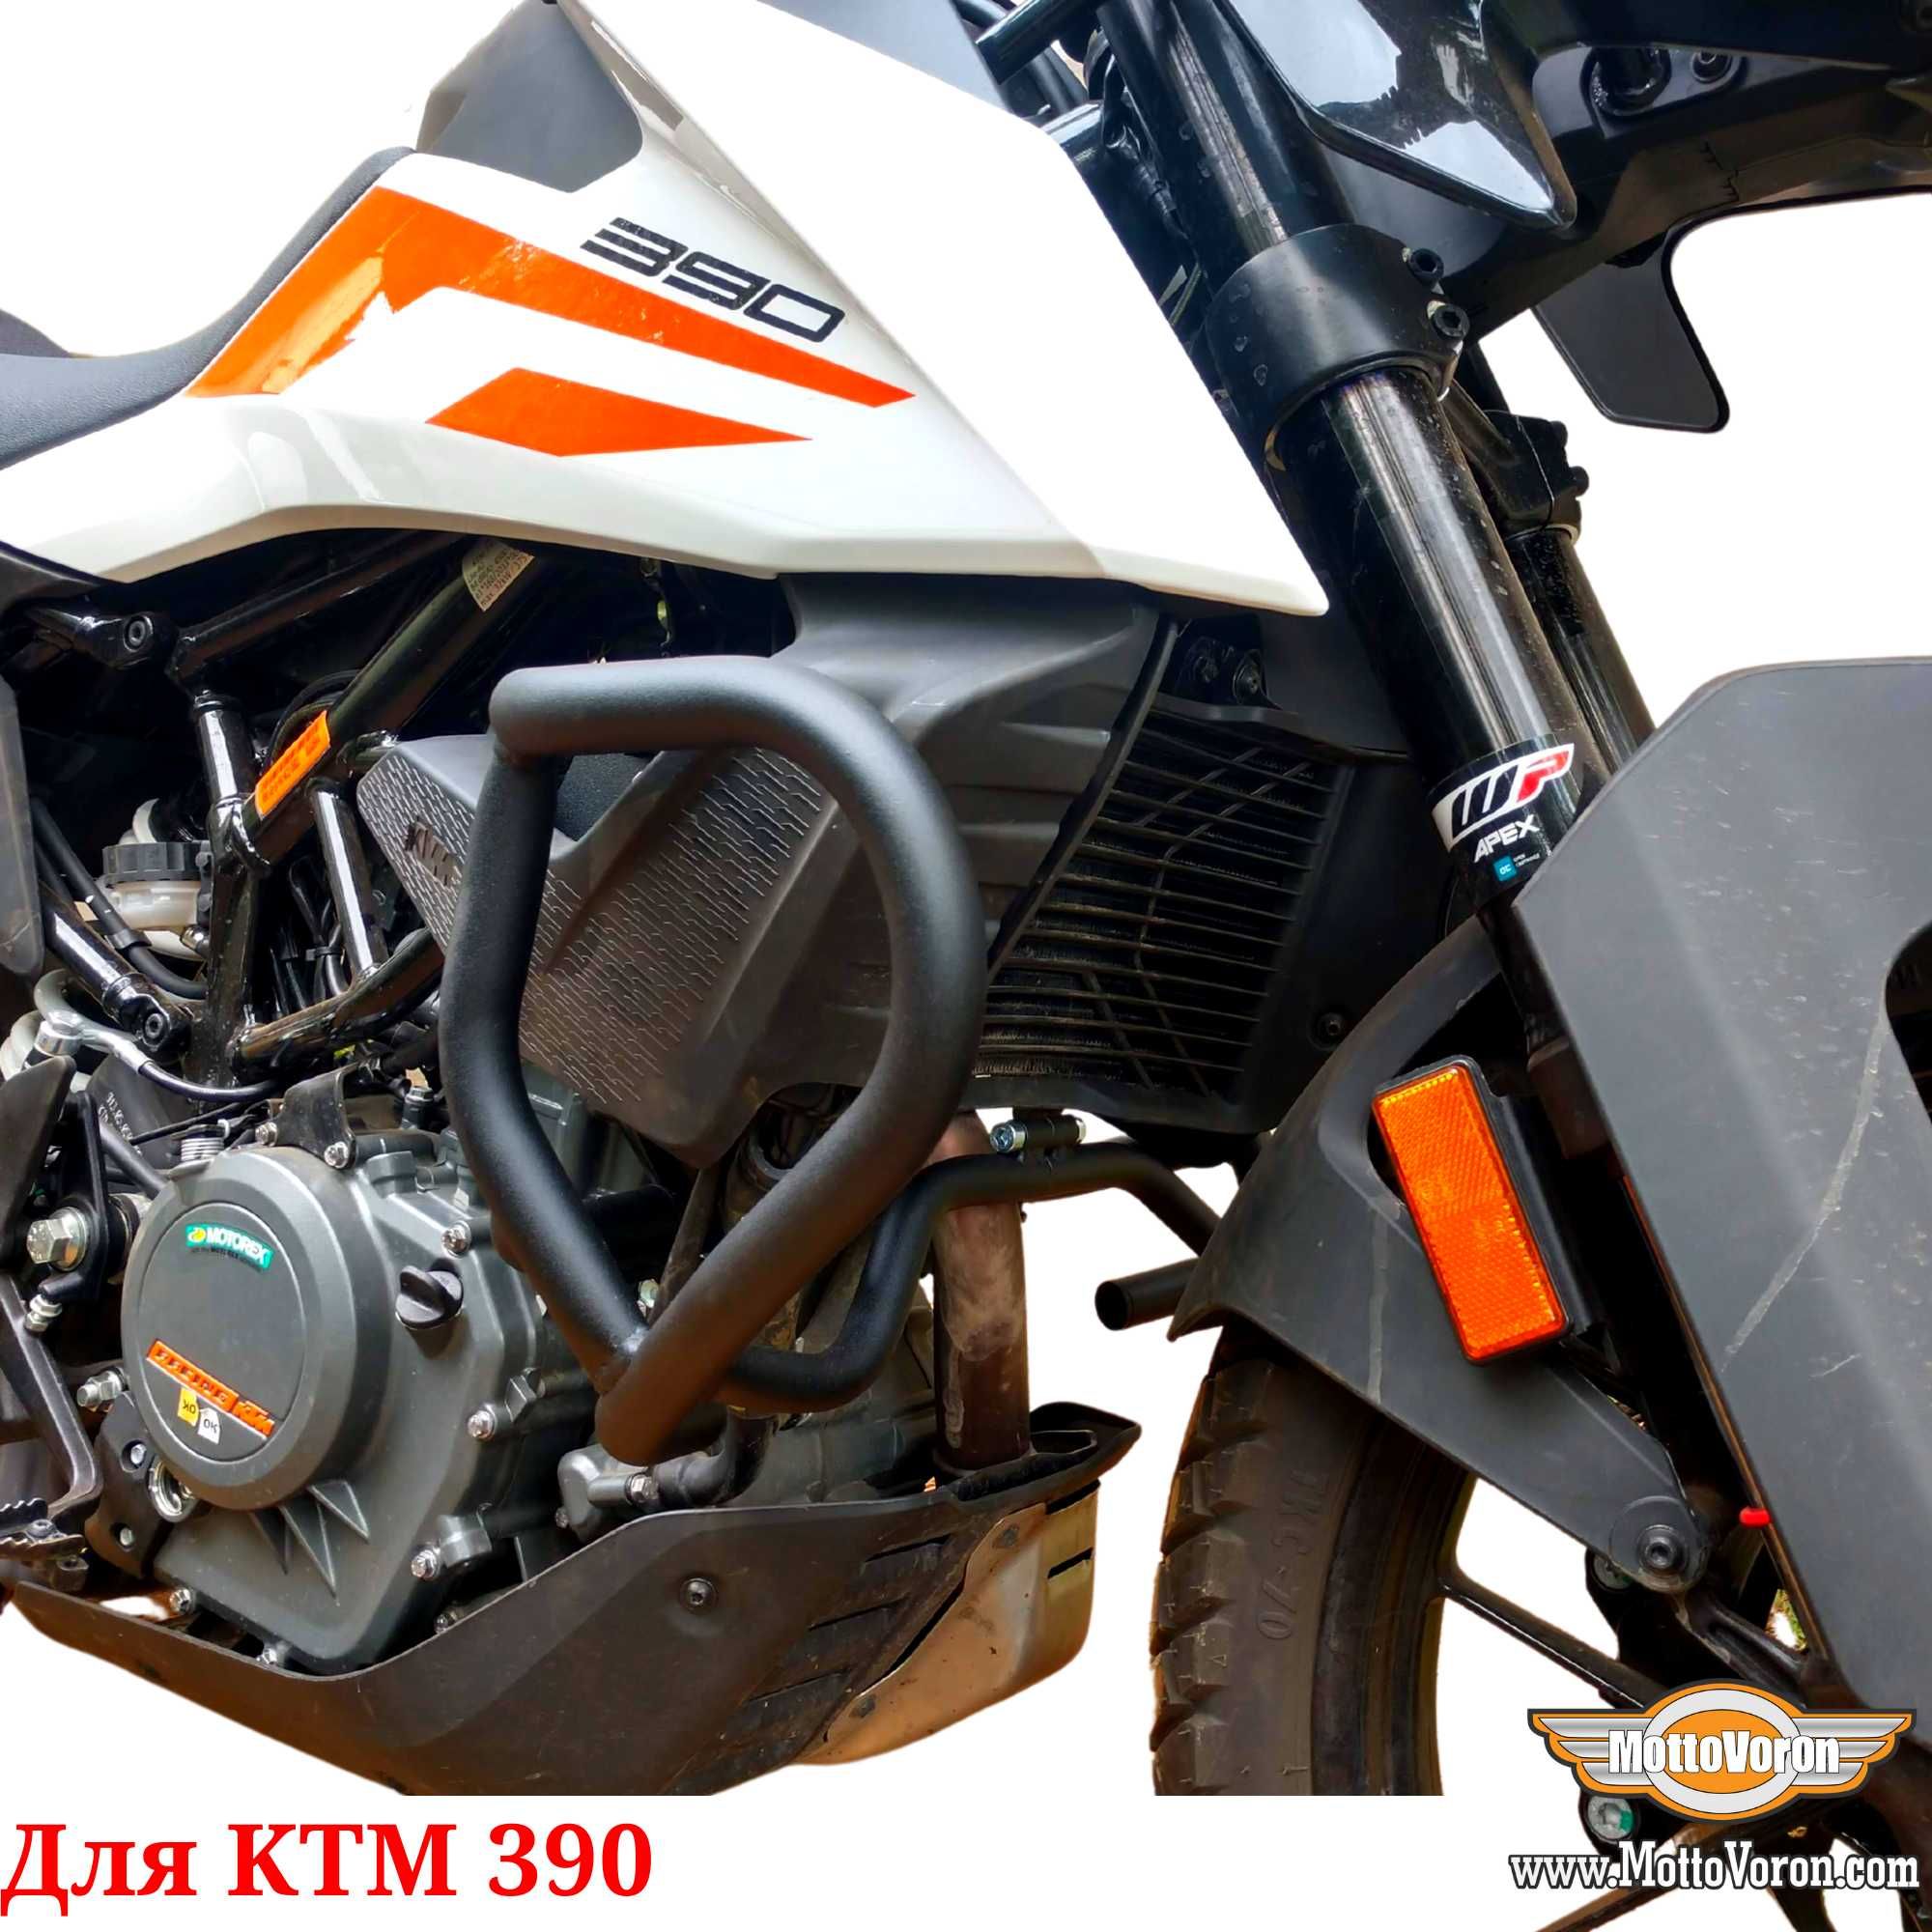 KTM 390 Защитные дуги KTM 390 Adventure клетка защита обвес